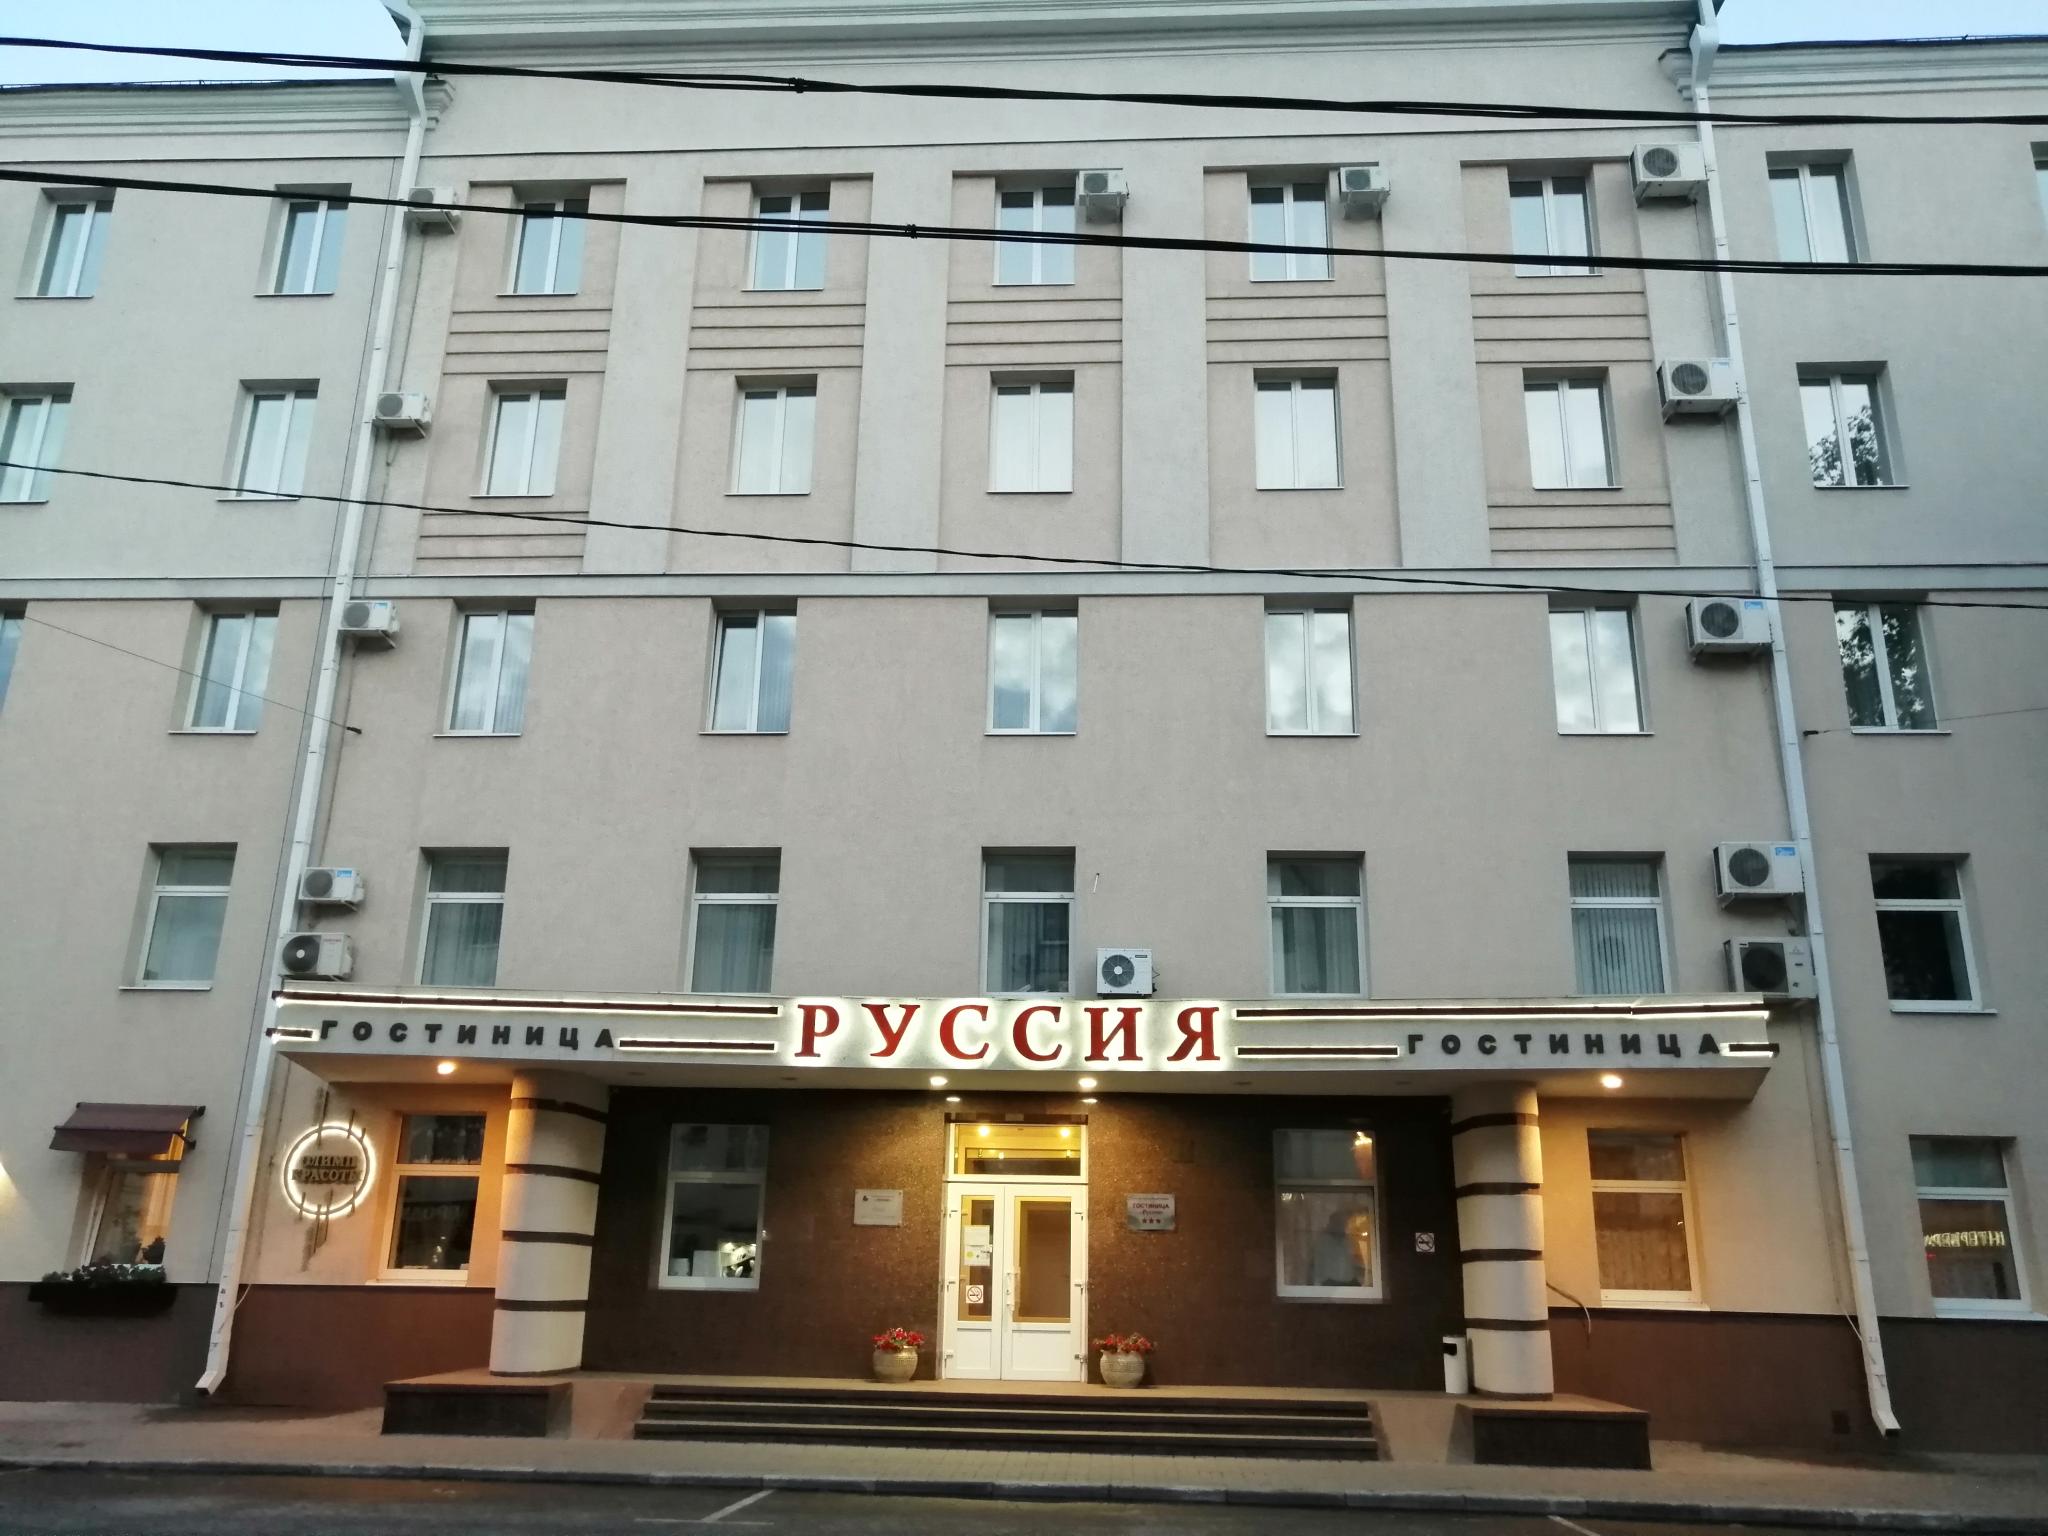 Воронеж (гостиница)